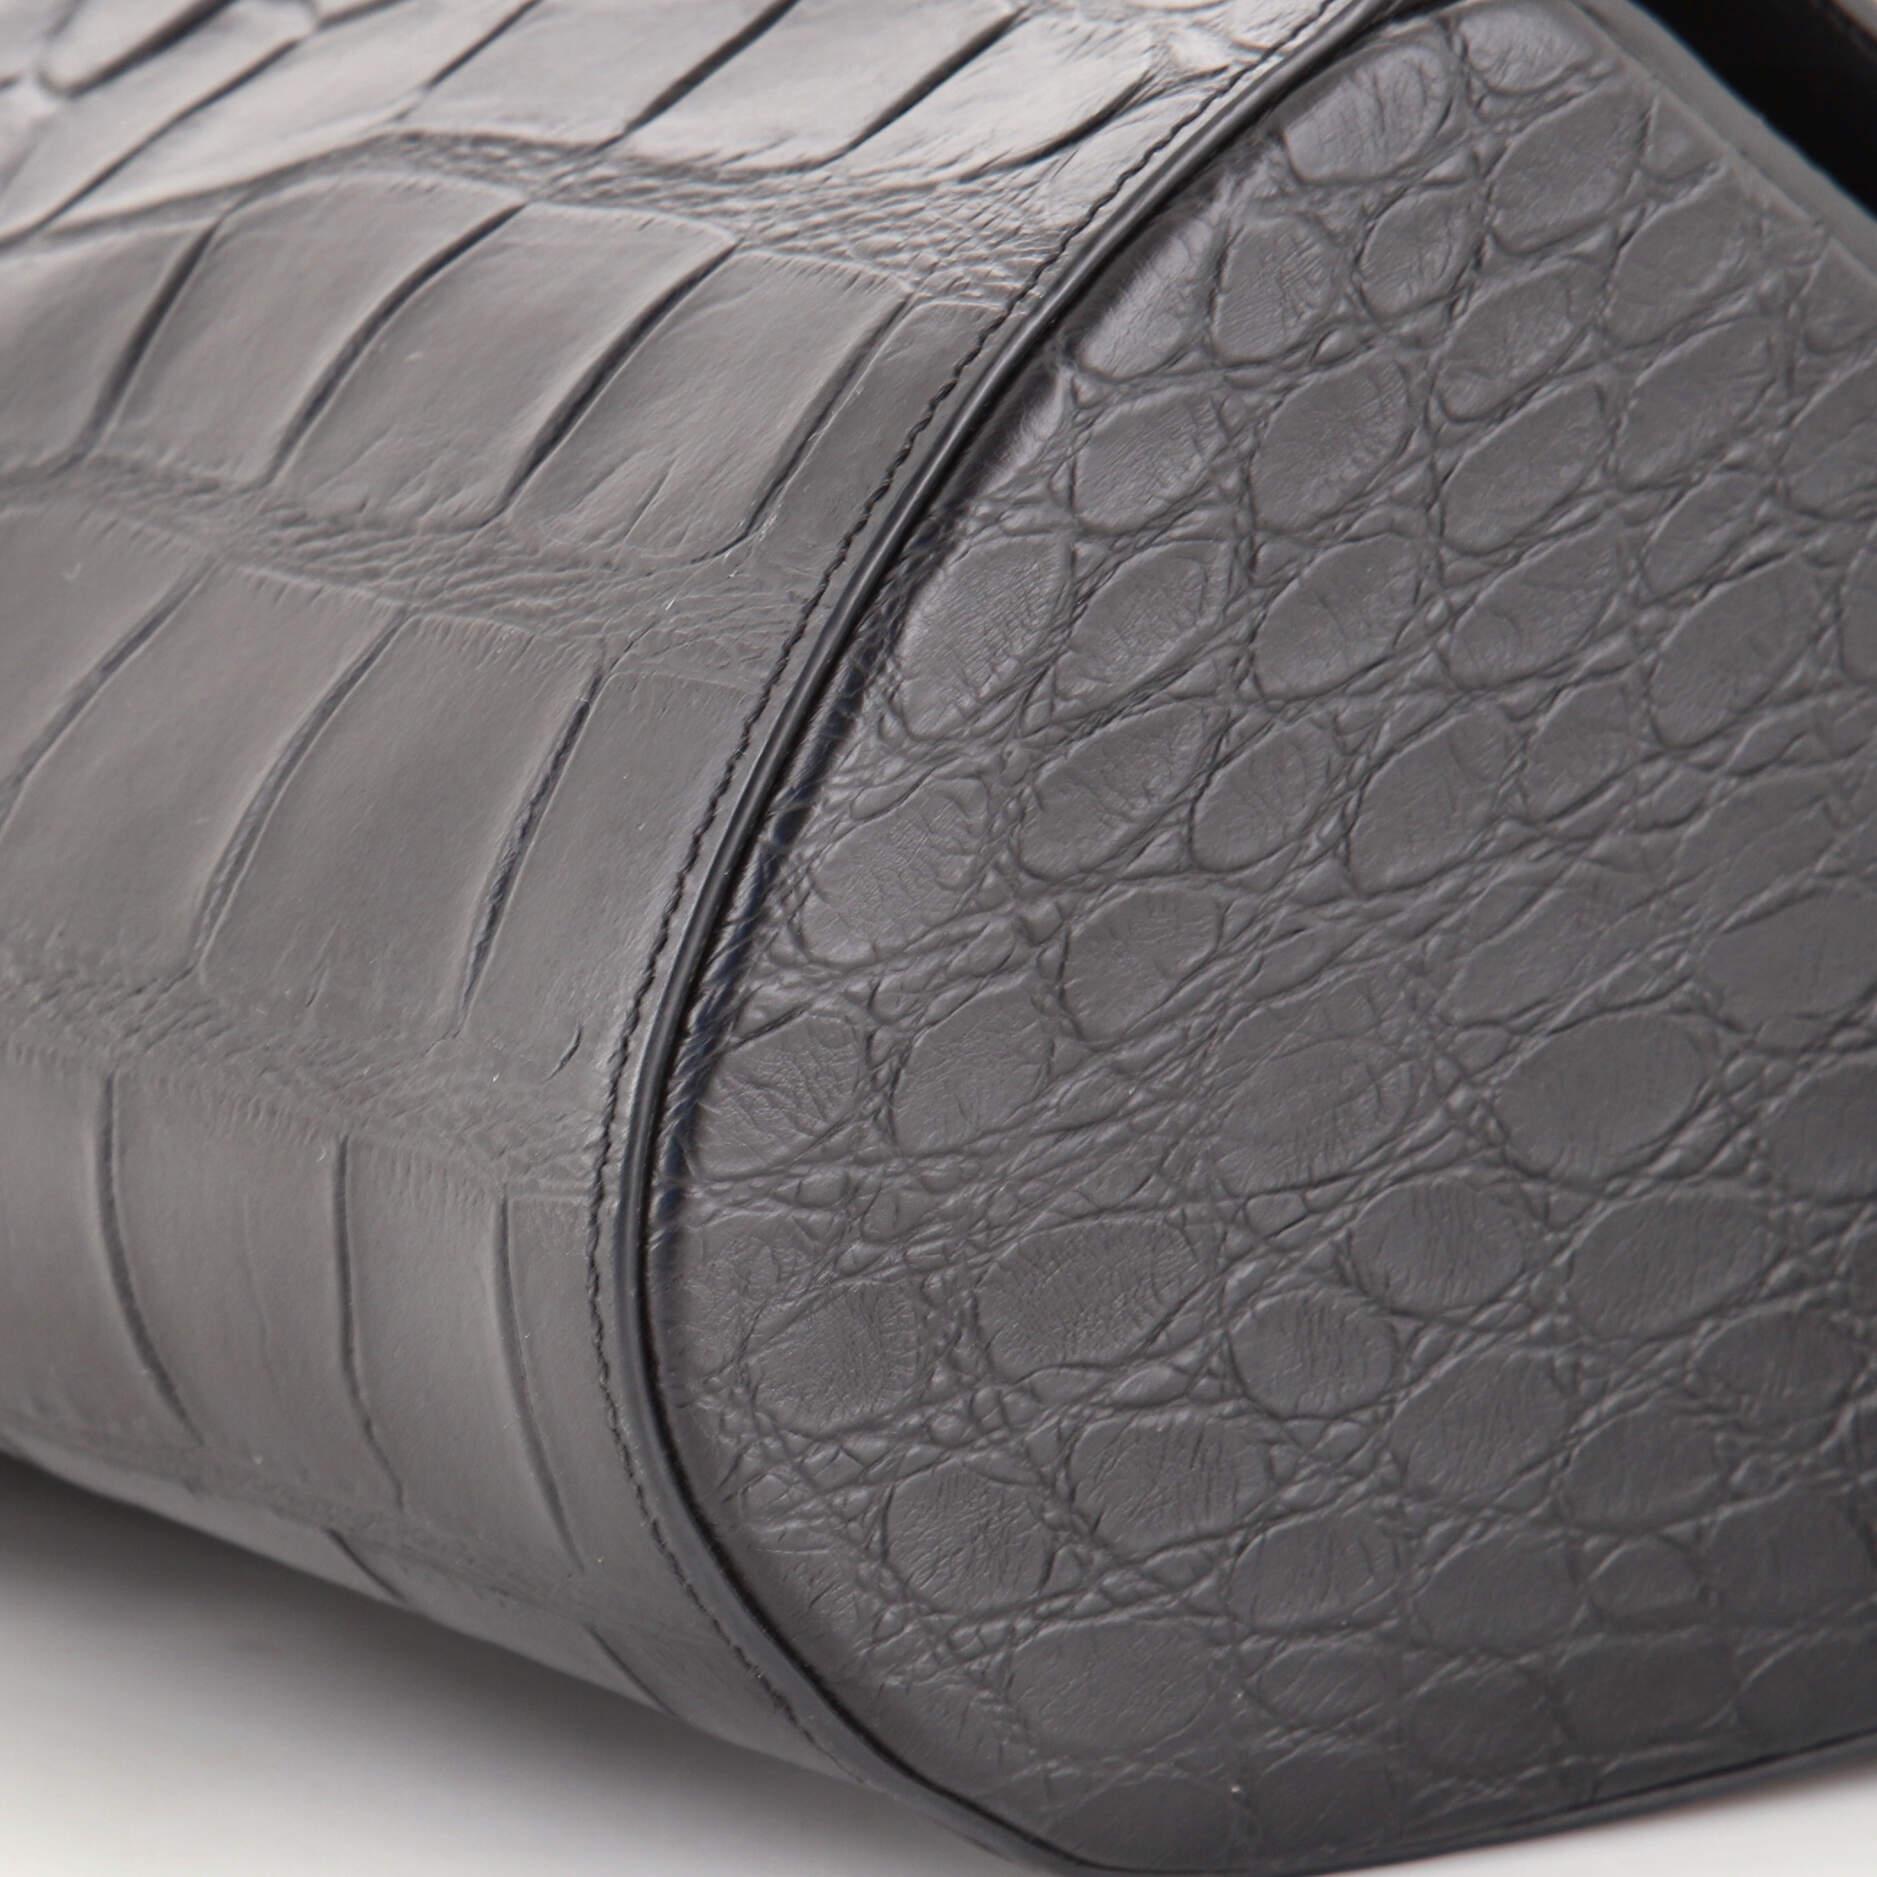 Givenchy Pandora Box Bag Crocodile Embossed Leather Medium 2